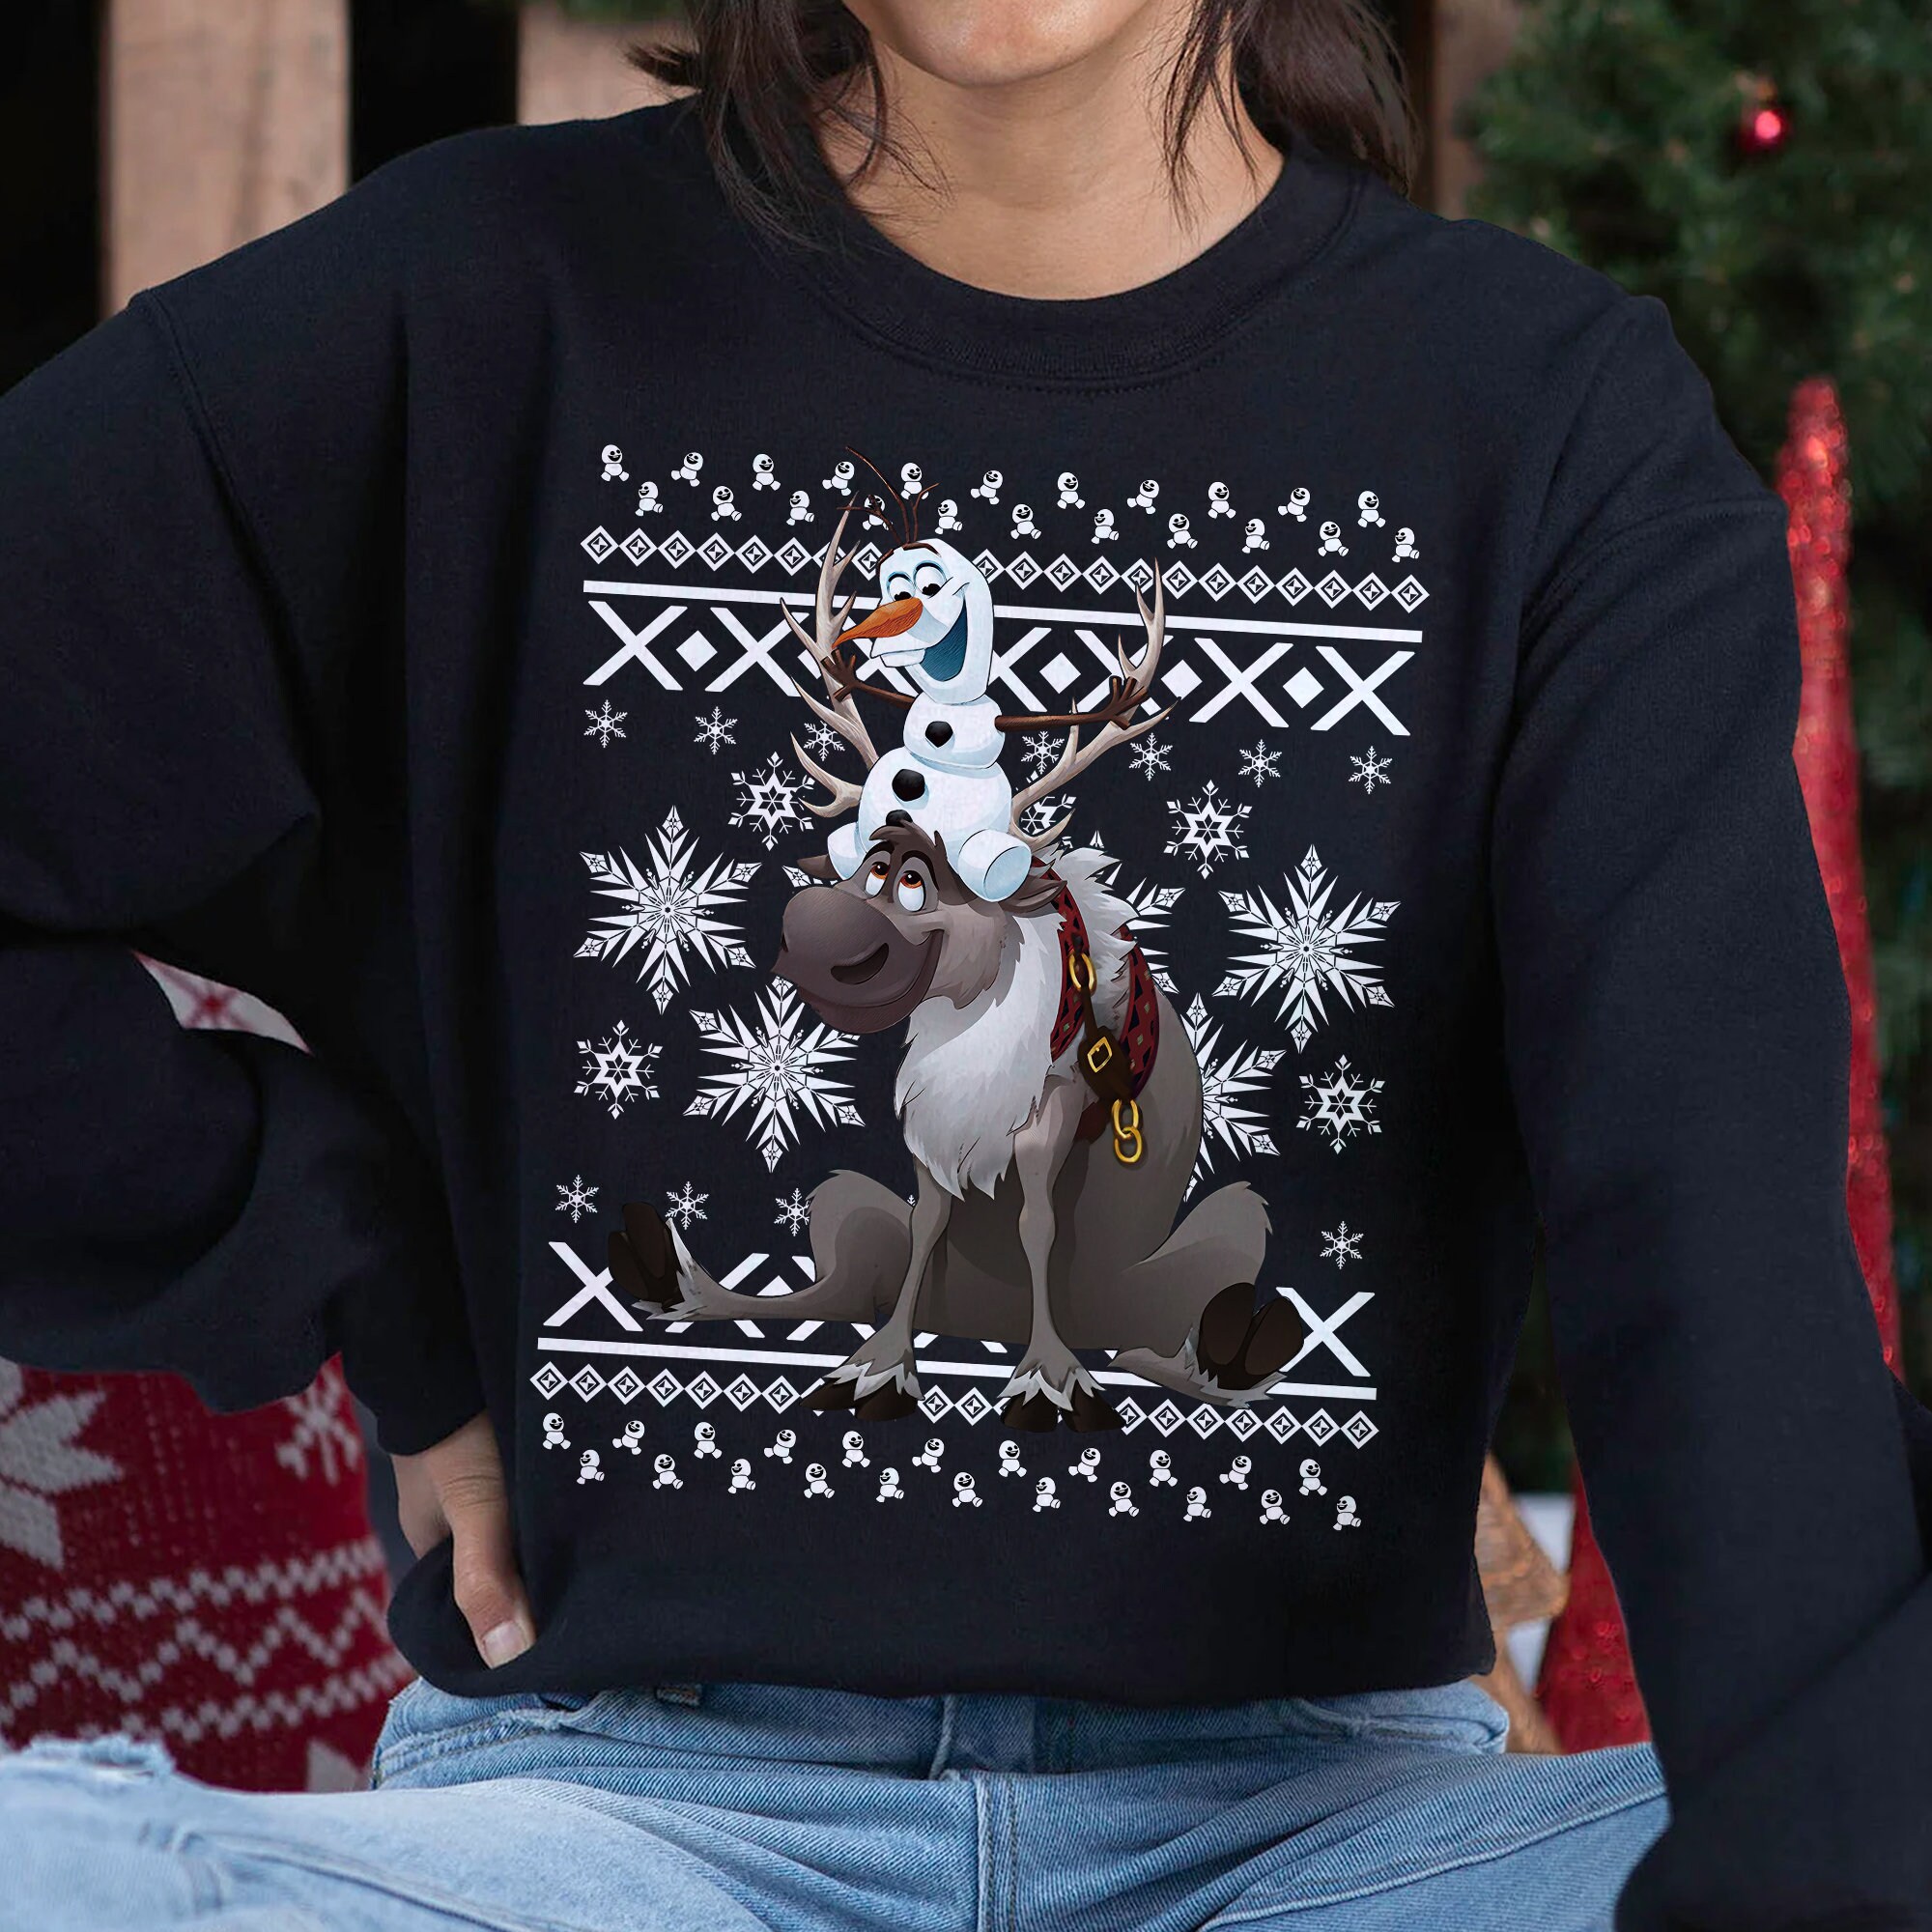 Visiter la boutique DisneyDisney Frozen Olaf and Sven Pixel Design Women's Hooded Sweatshirt 